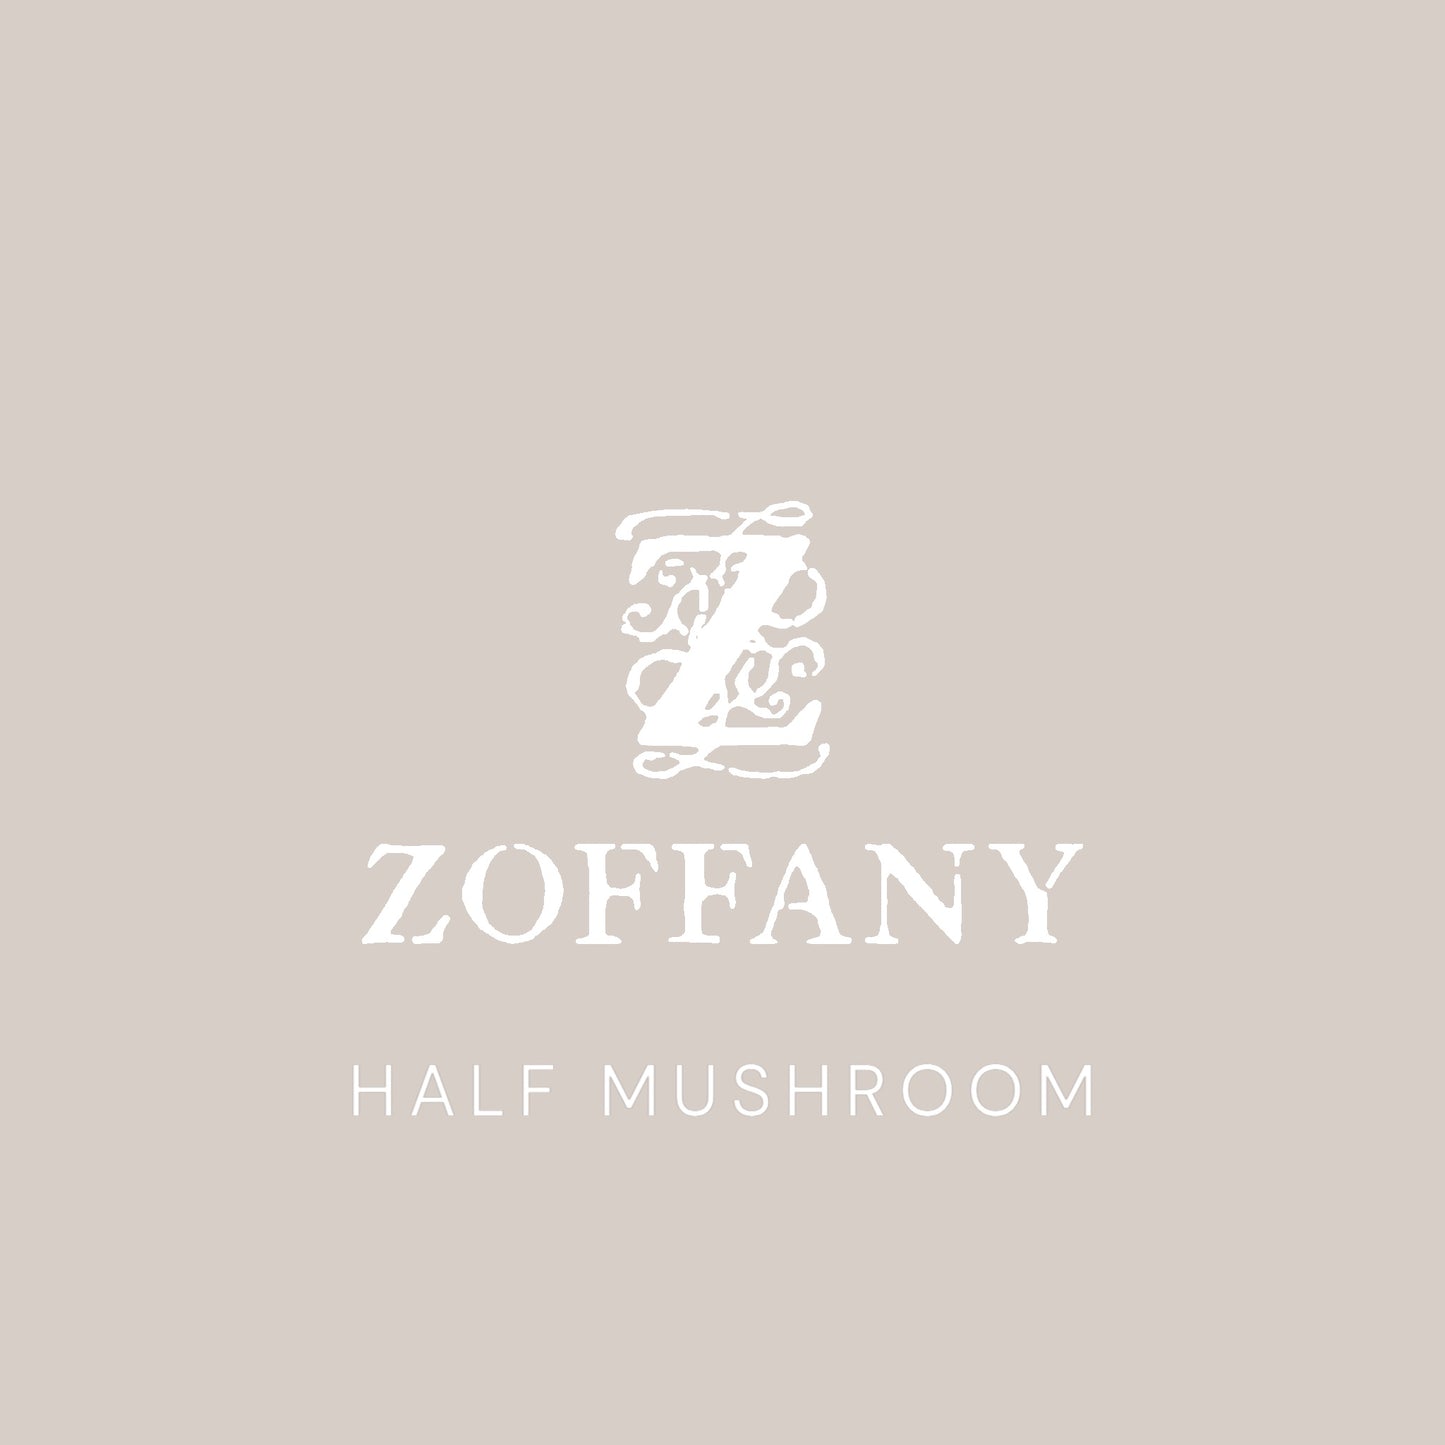 Zoffany's Half Mushroom Paint